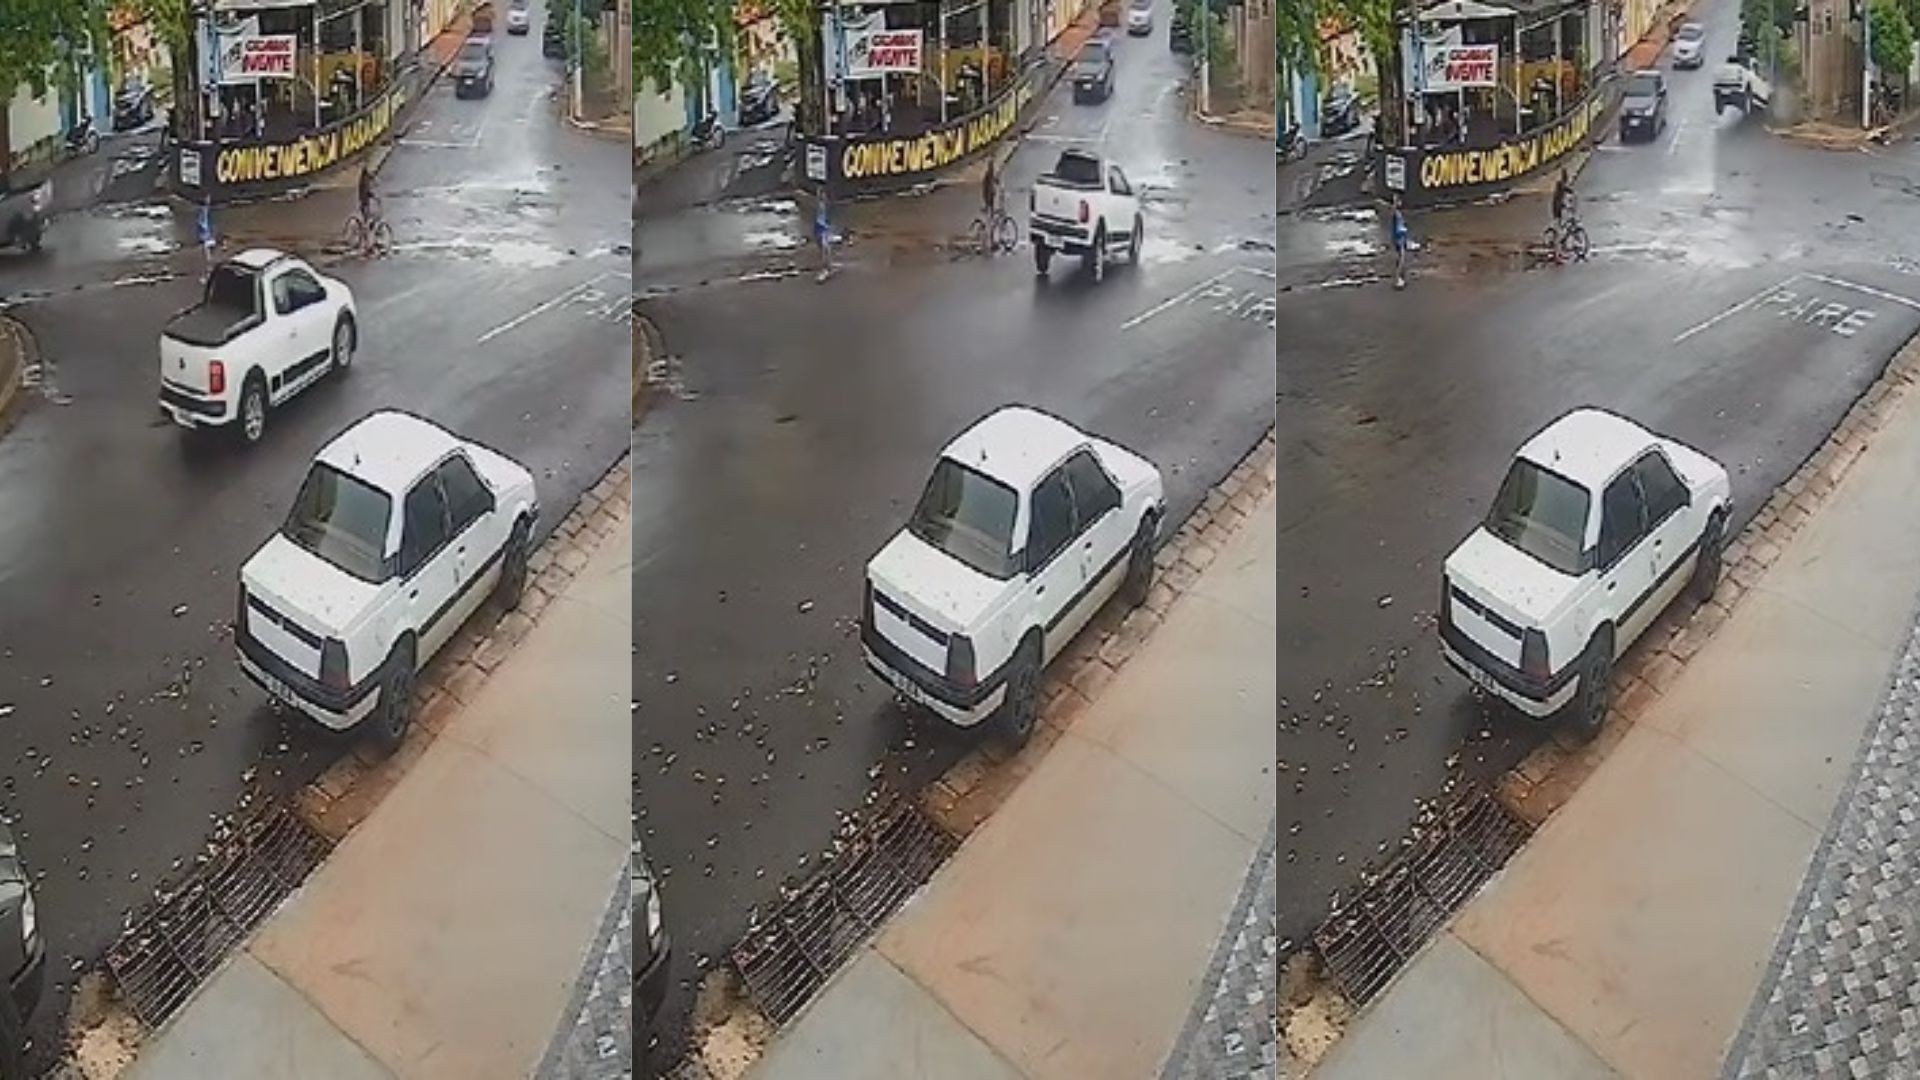 Ciclista escapa por pouco de ser atingido por carro desgovernado em Tupã; vídeo